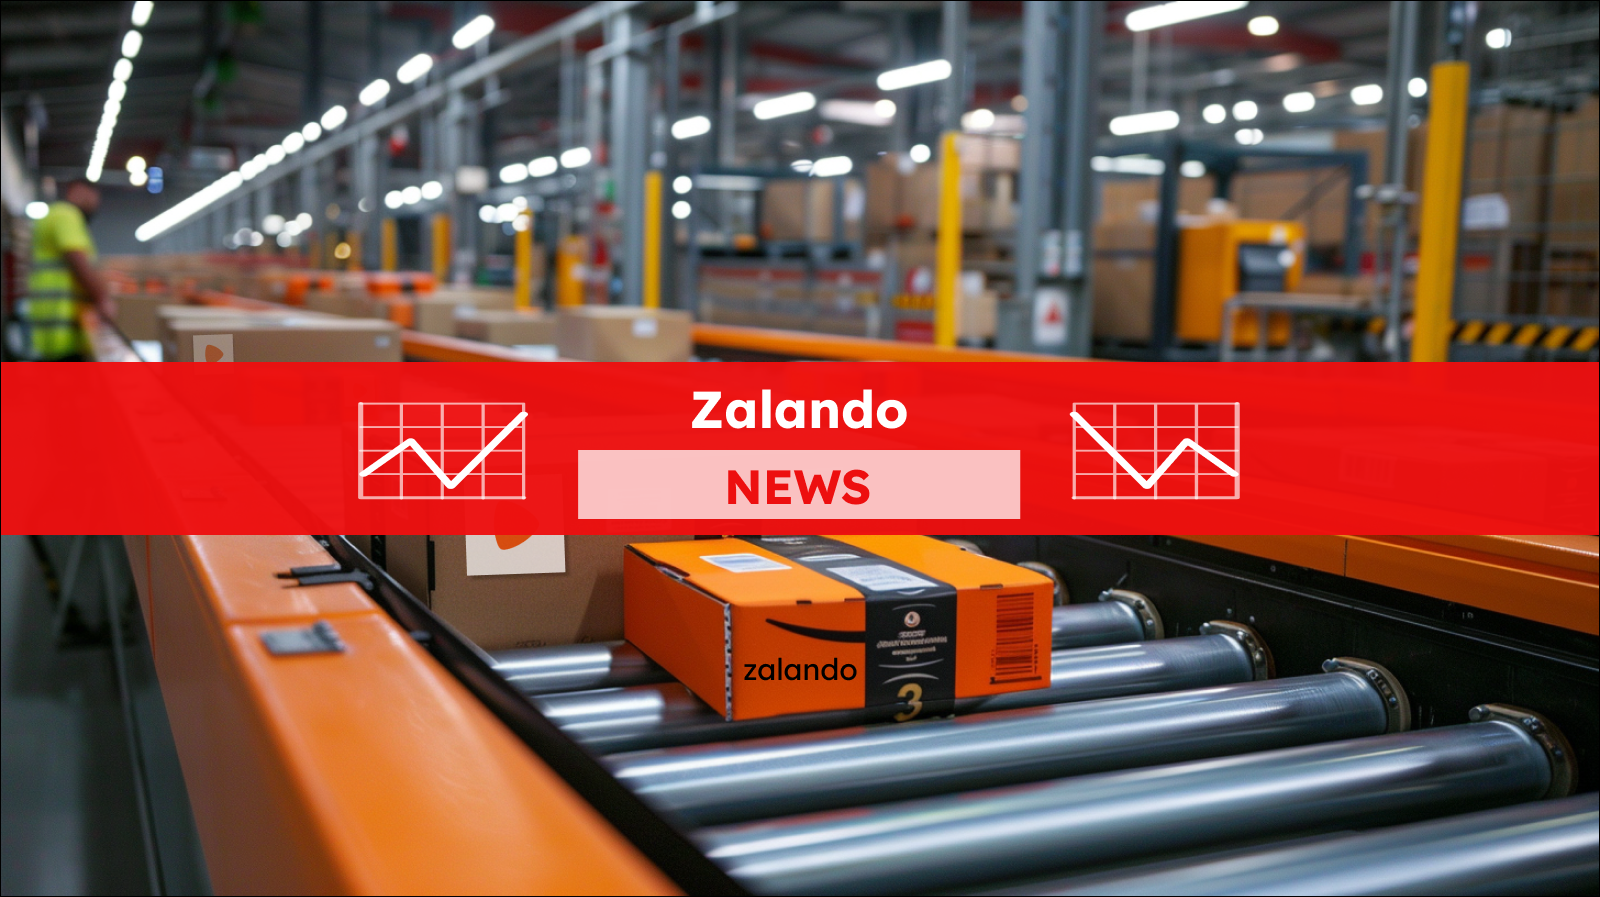 Pakete von Zalando, die auf Förderbändern in einem Logistikzentrum transportiert werden, mit einem Zalando NEWS Banner